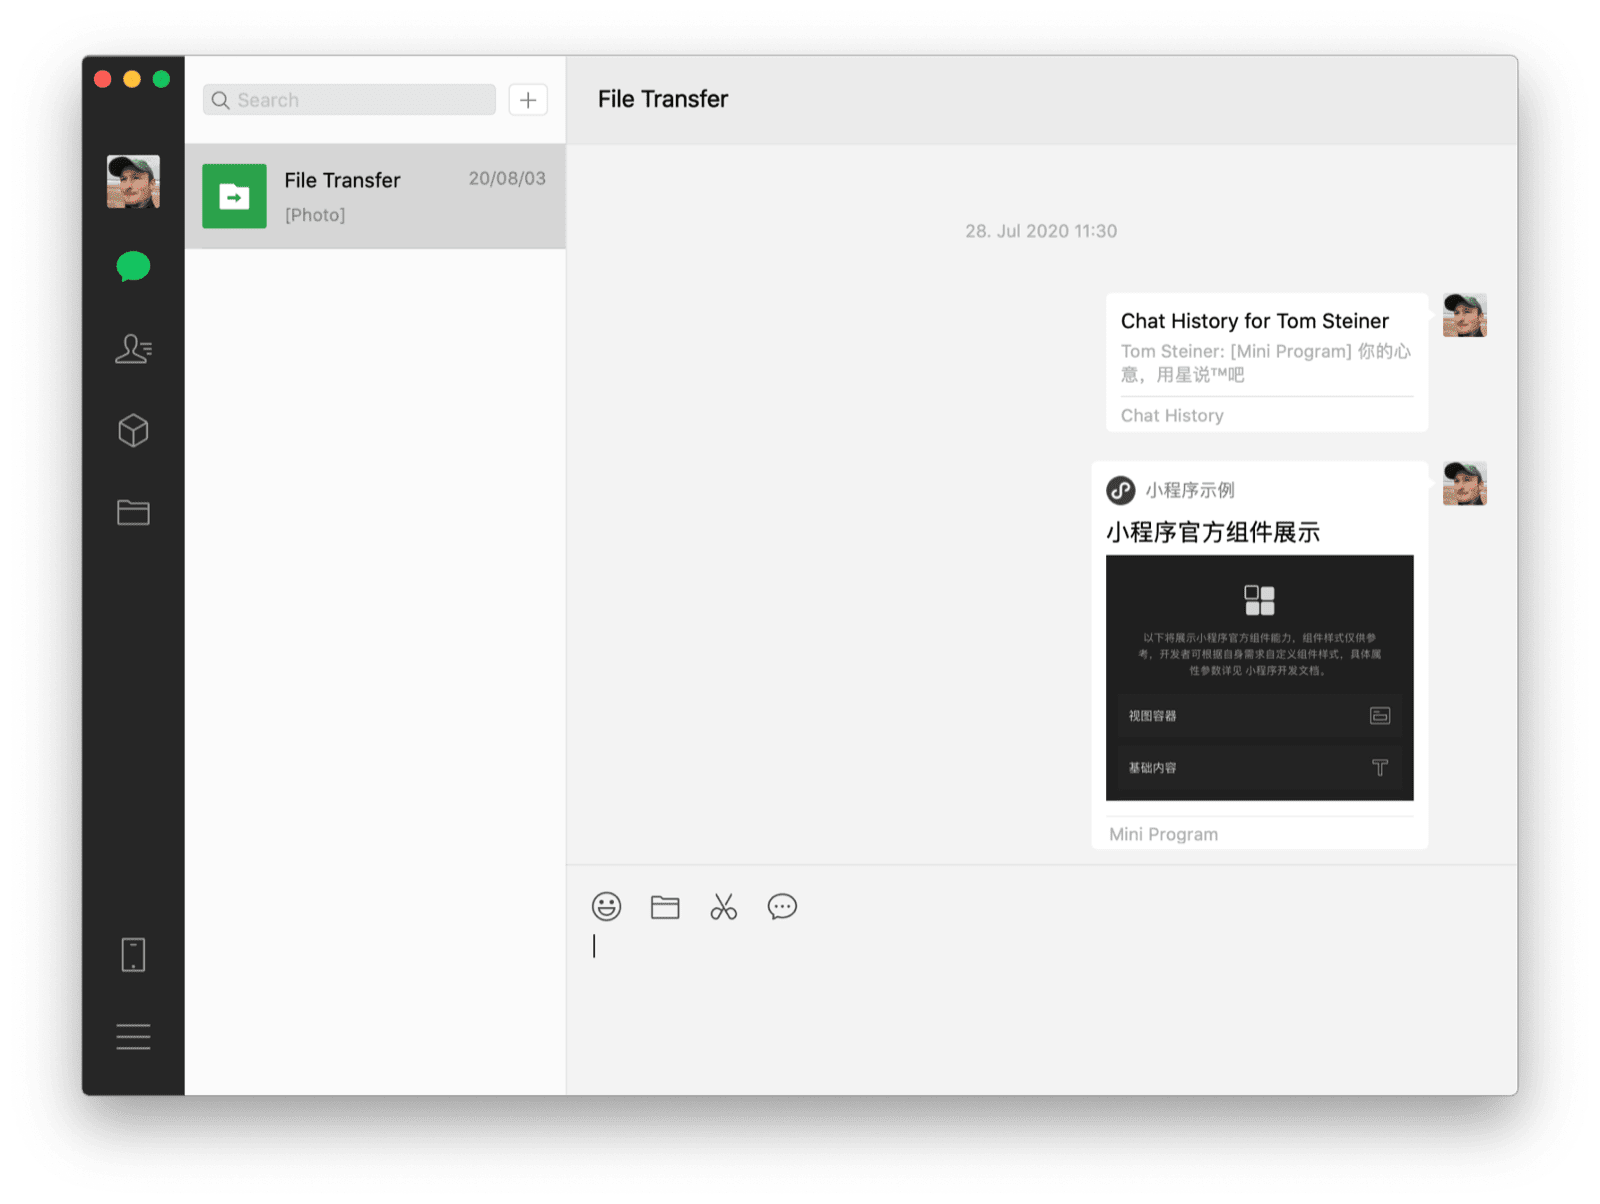 Komputerowy klient WeChat na macOS przedstawiający czat ze sobą, udostępnioną miniaplikację i historię czatu w formie 2 widocznych wiadomości.